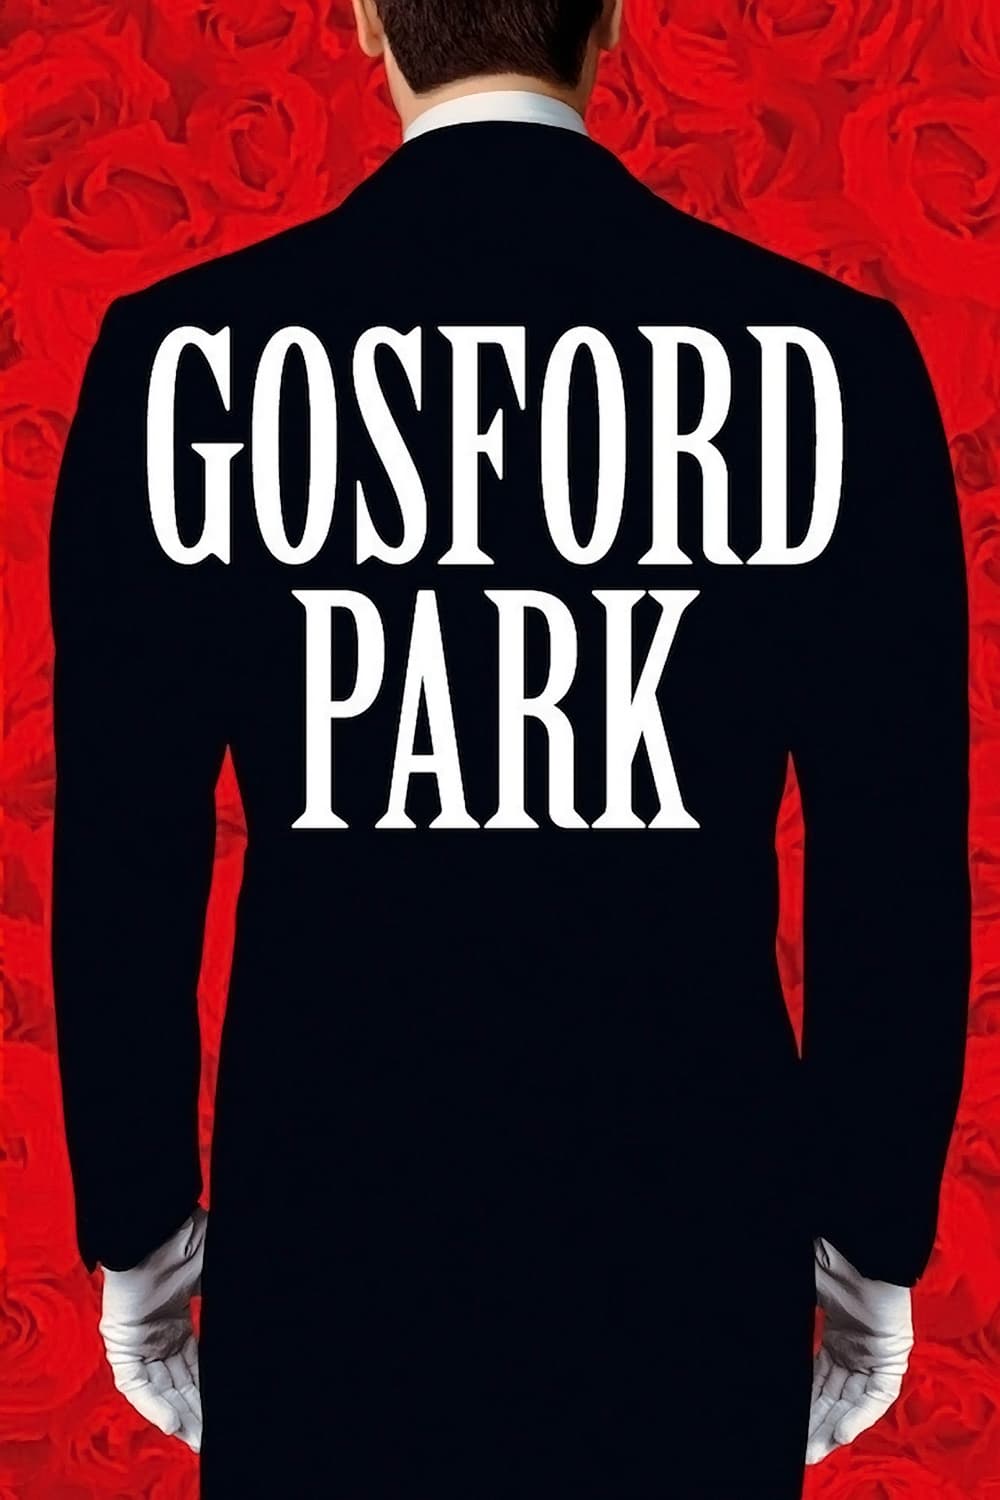 Gosford Park est-il disponible sur Netflix ou autre ?